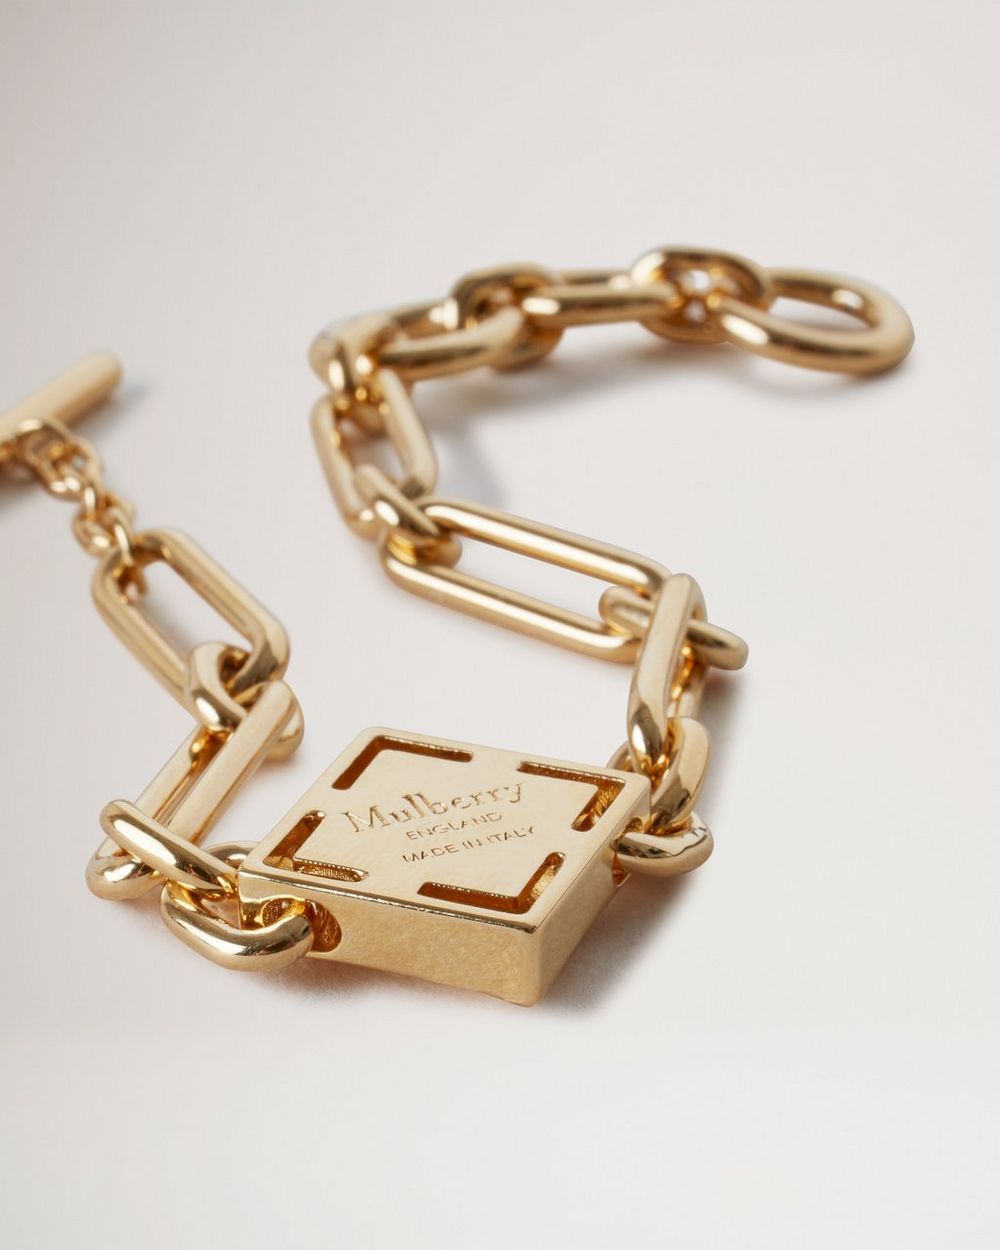 Elegant Louis Vuitton Monogram Party Bracelet Chile